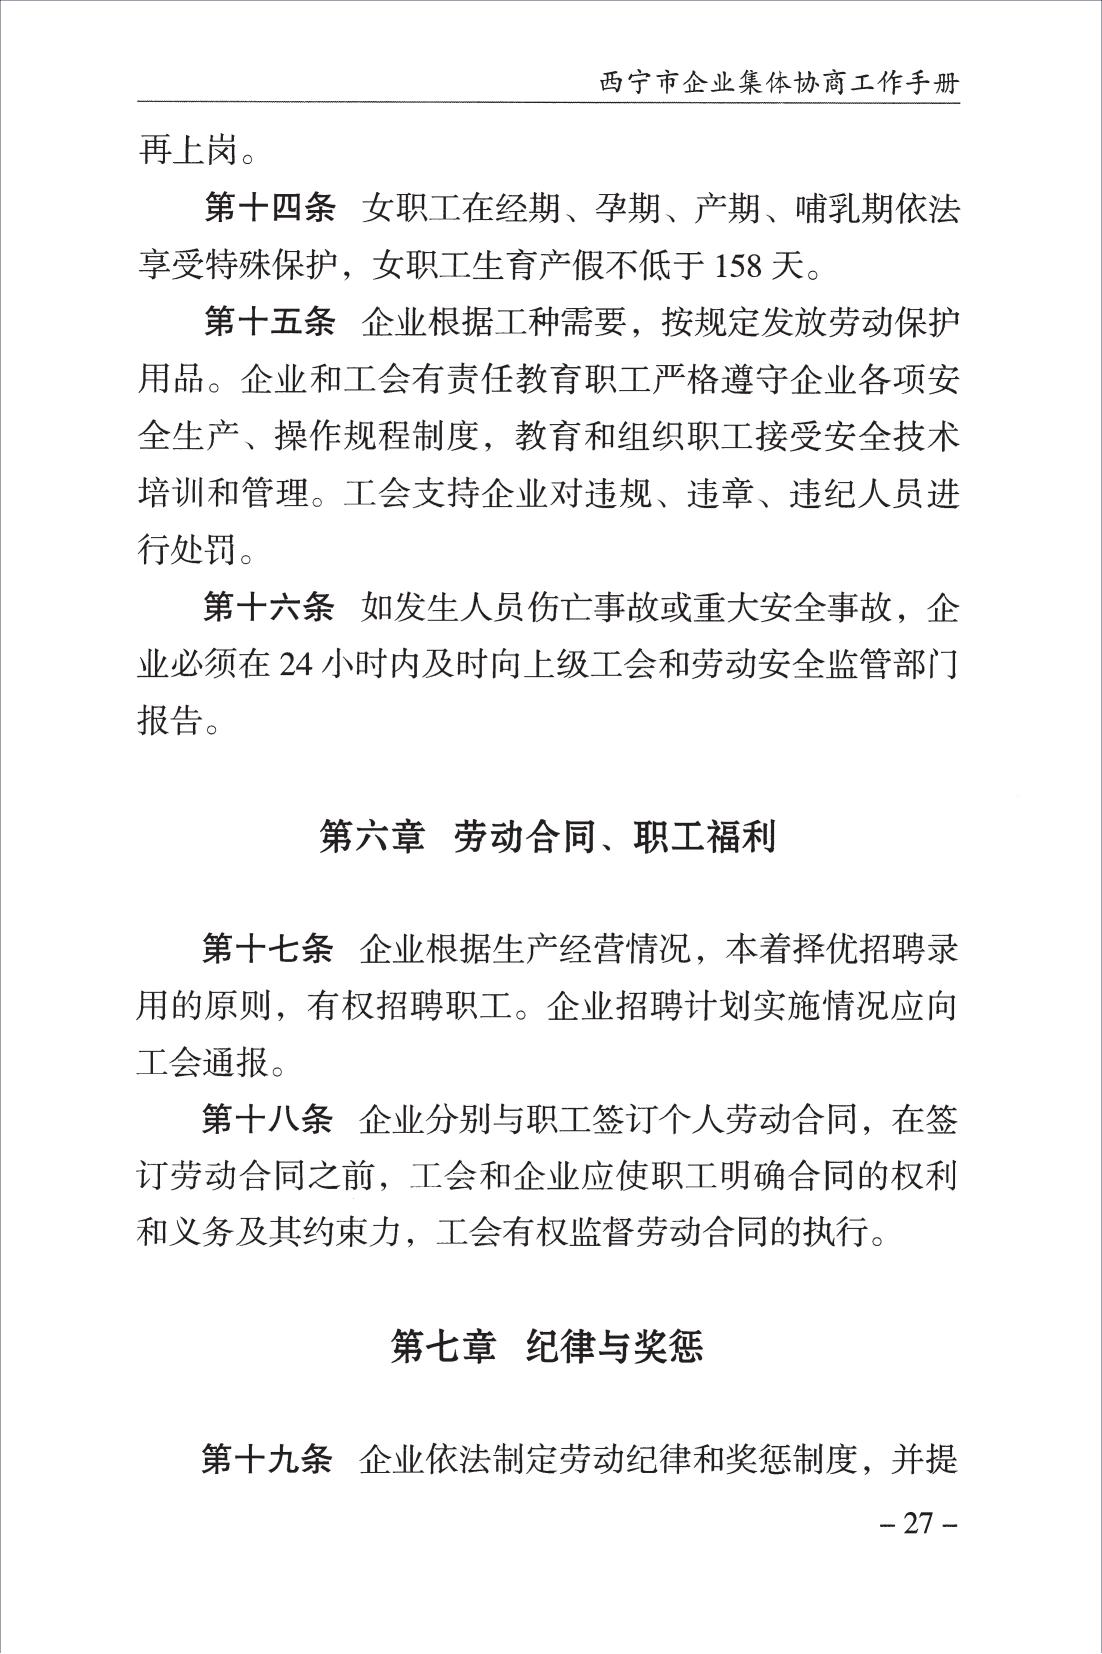 西宁市企业集体协商工作手册_29.jpg